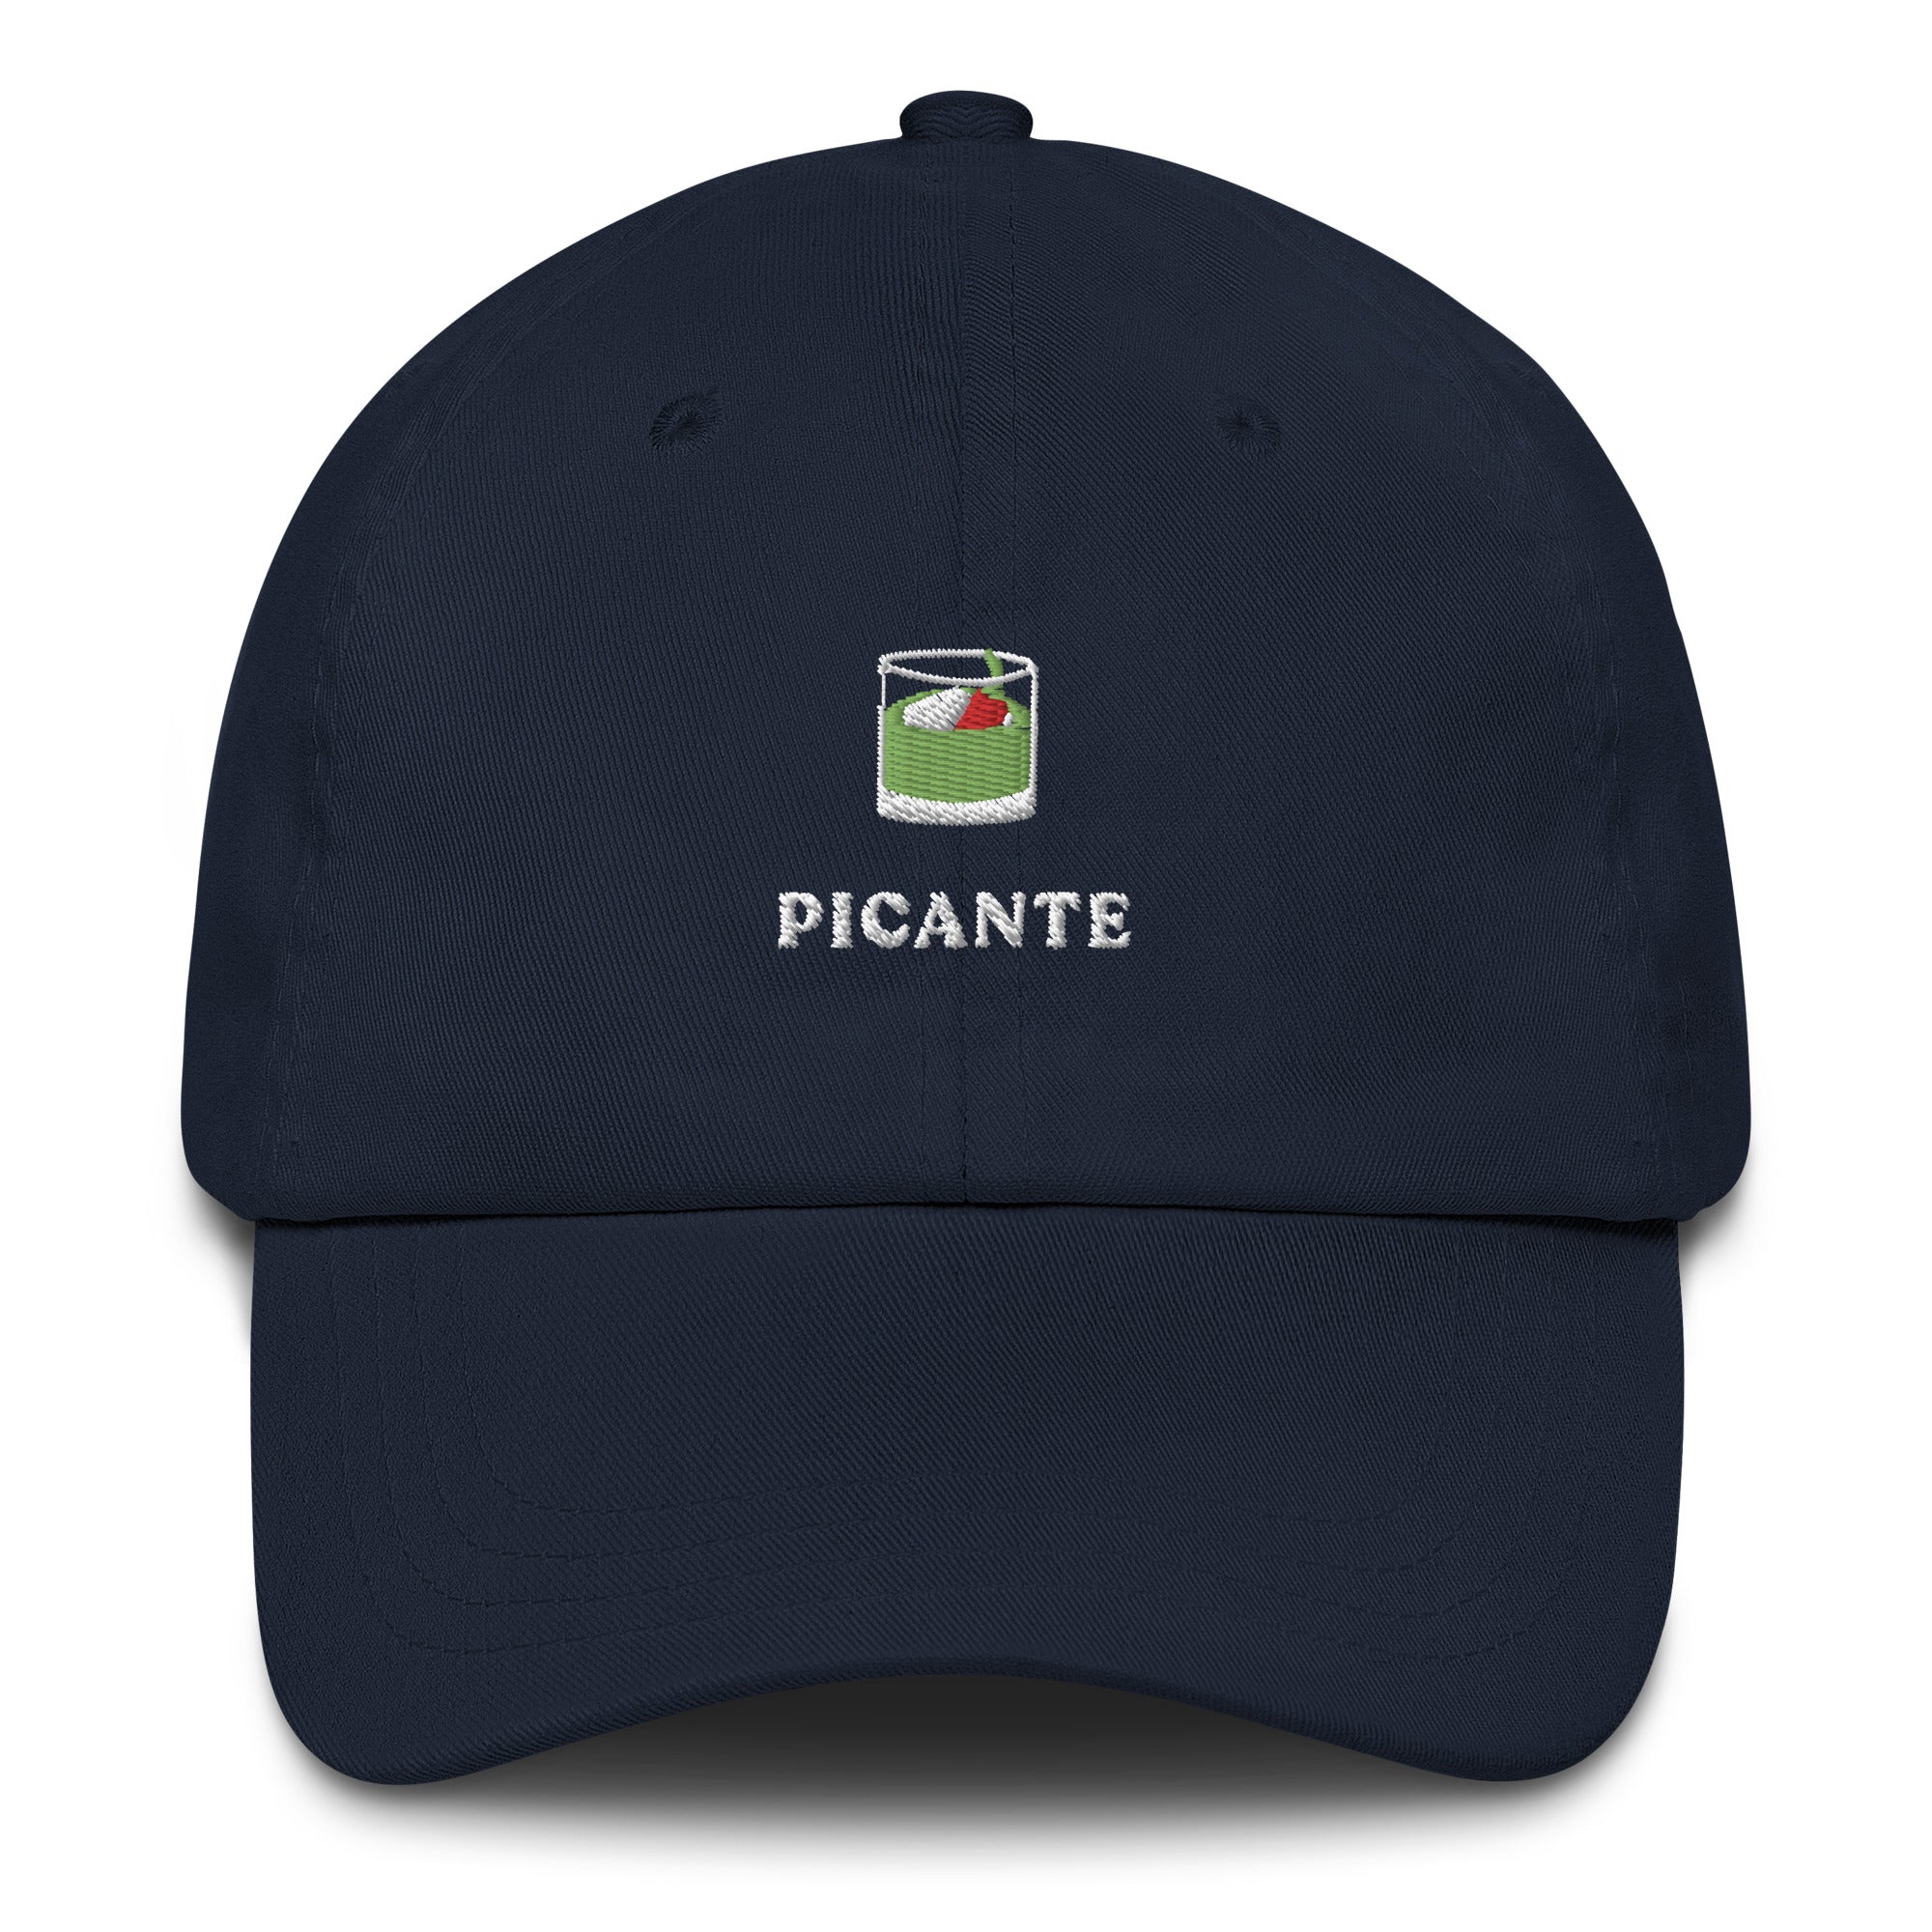 Picante - Cap